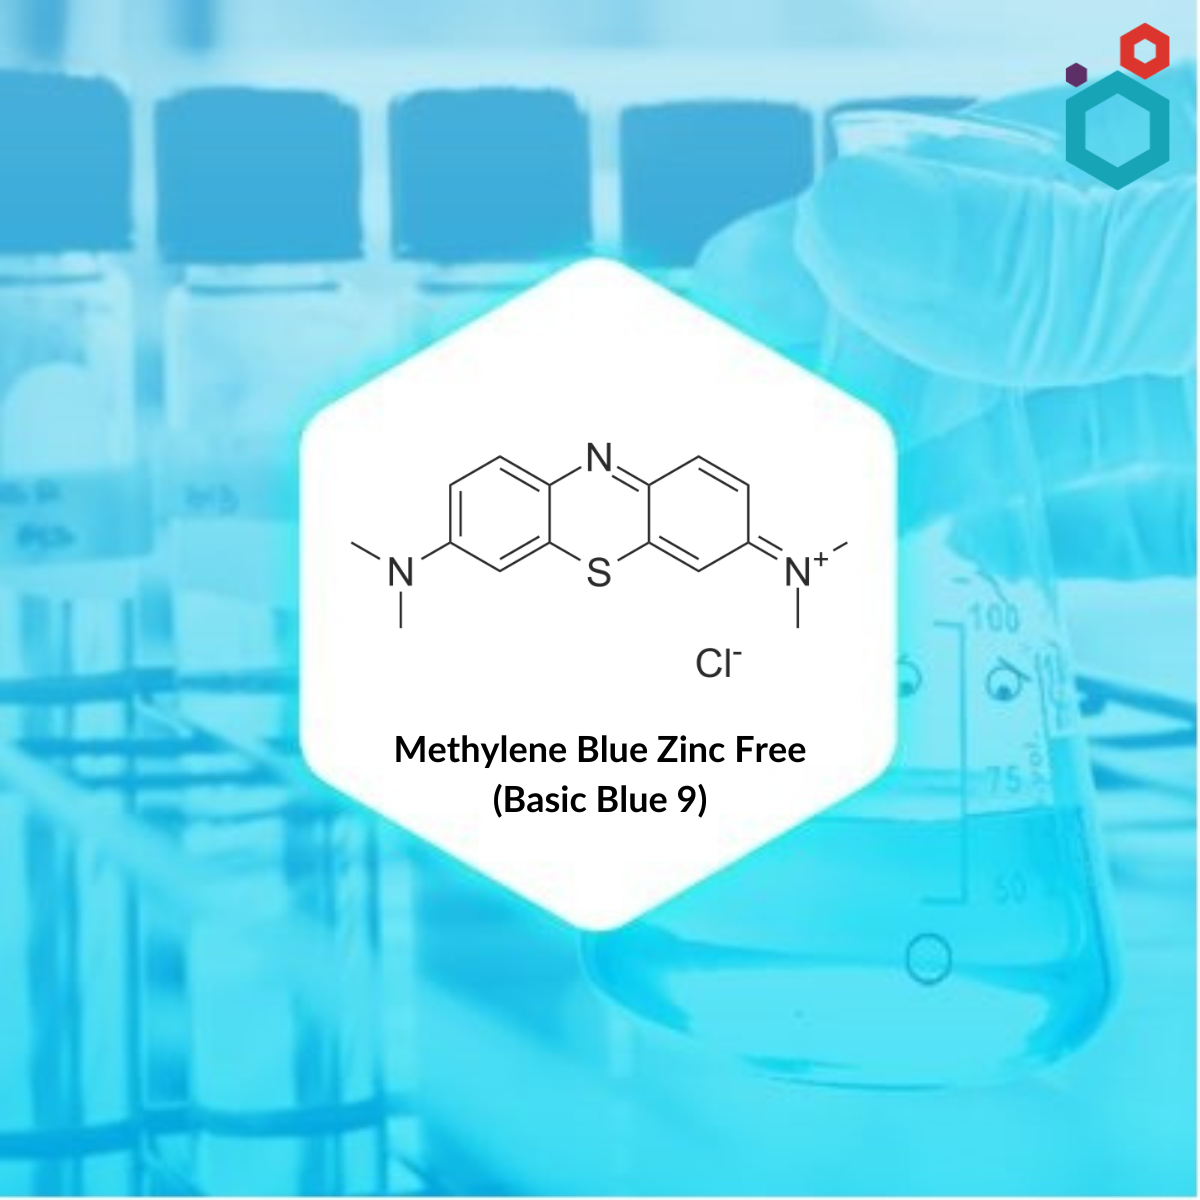 Methylene Blue Zinc Free (Basic Blue 9) Chemical Structure